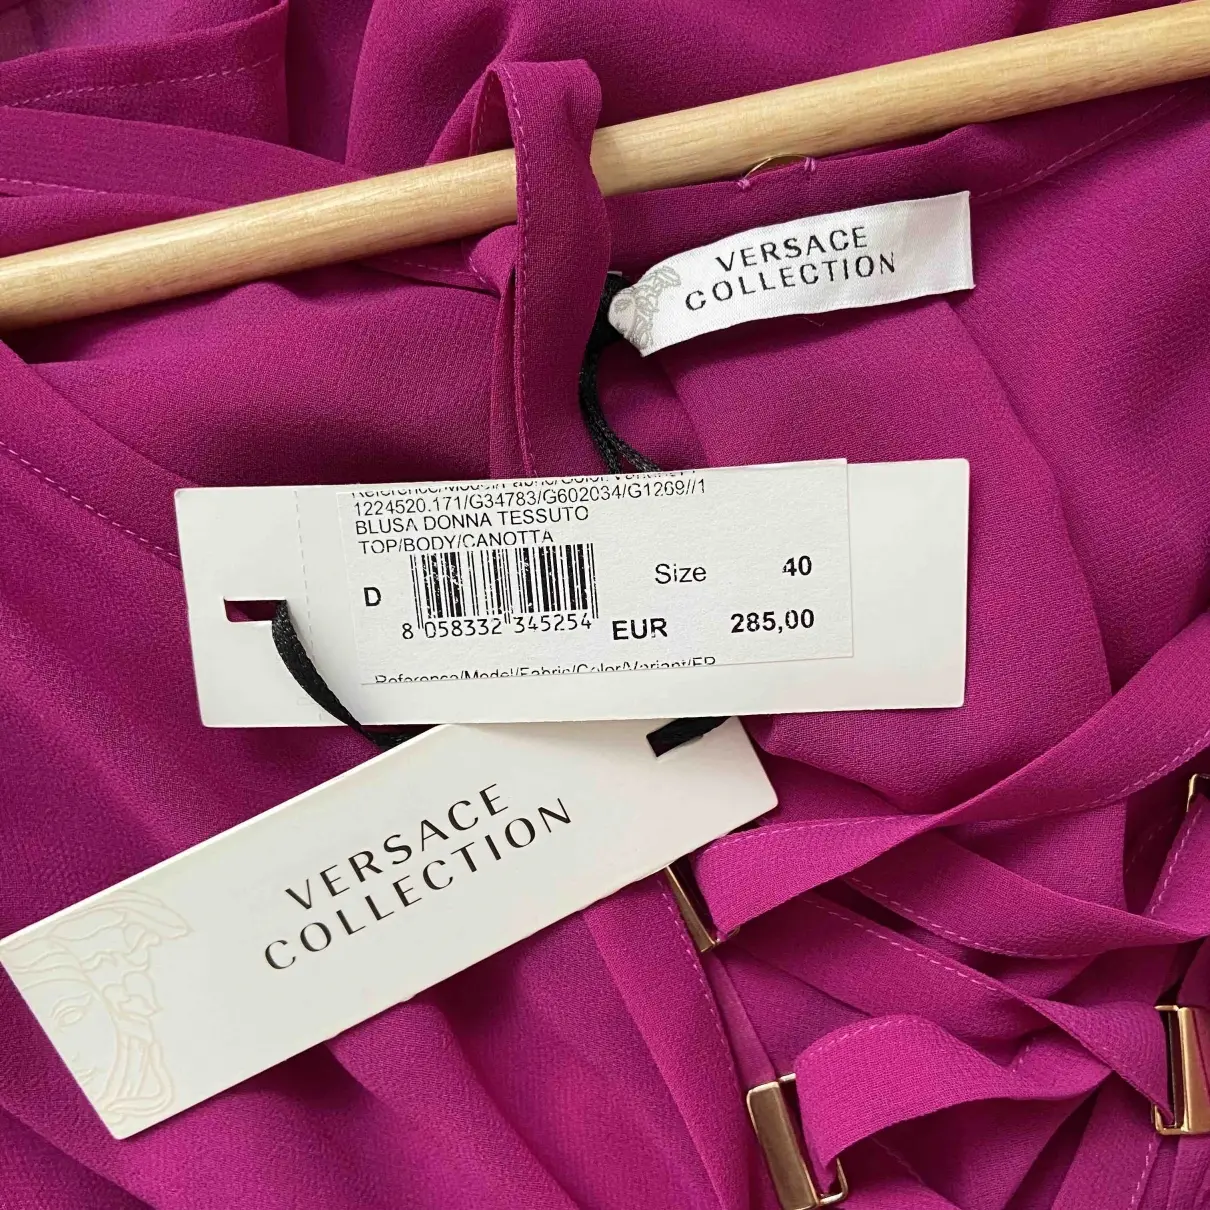 Buy Versace Purple Cotton Top online